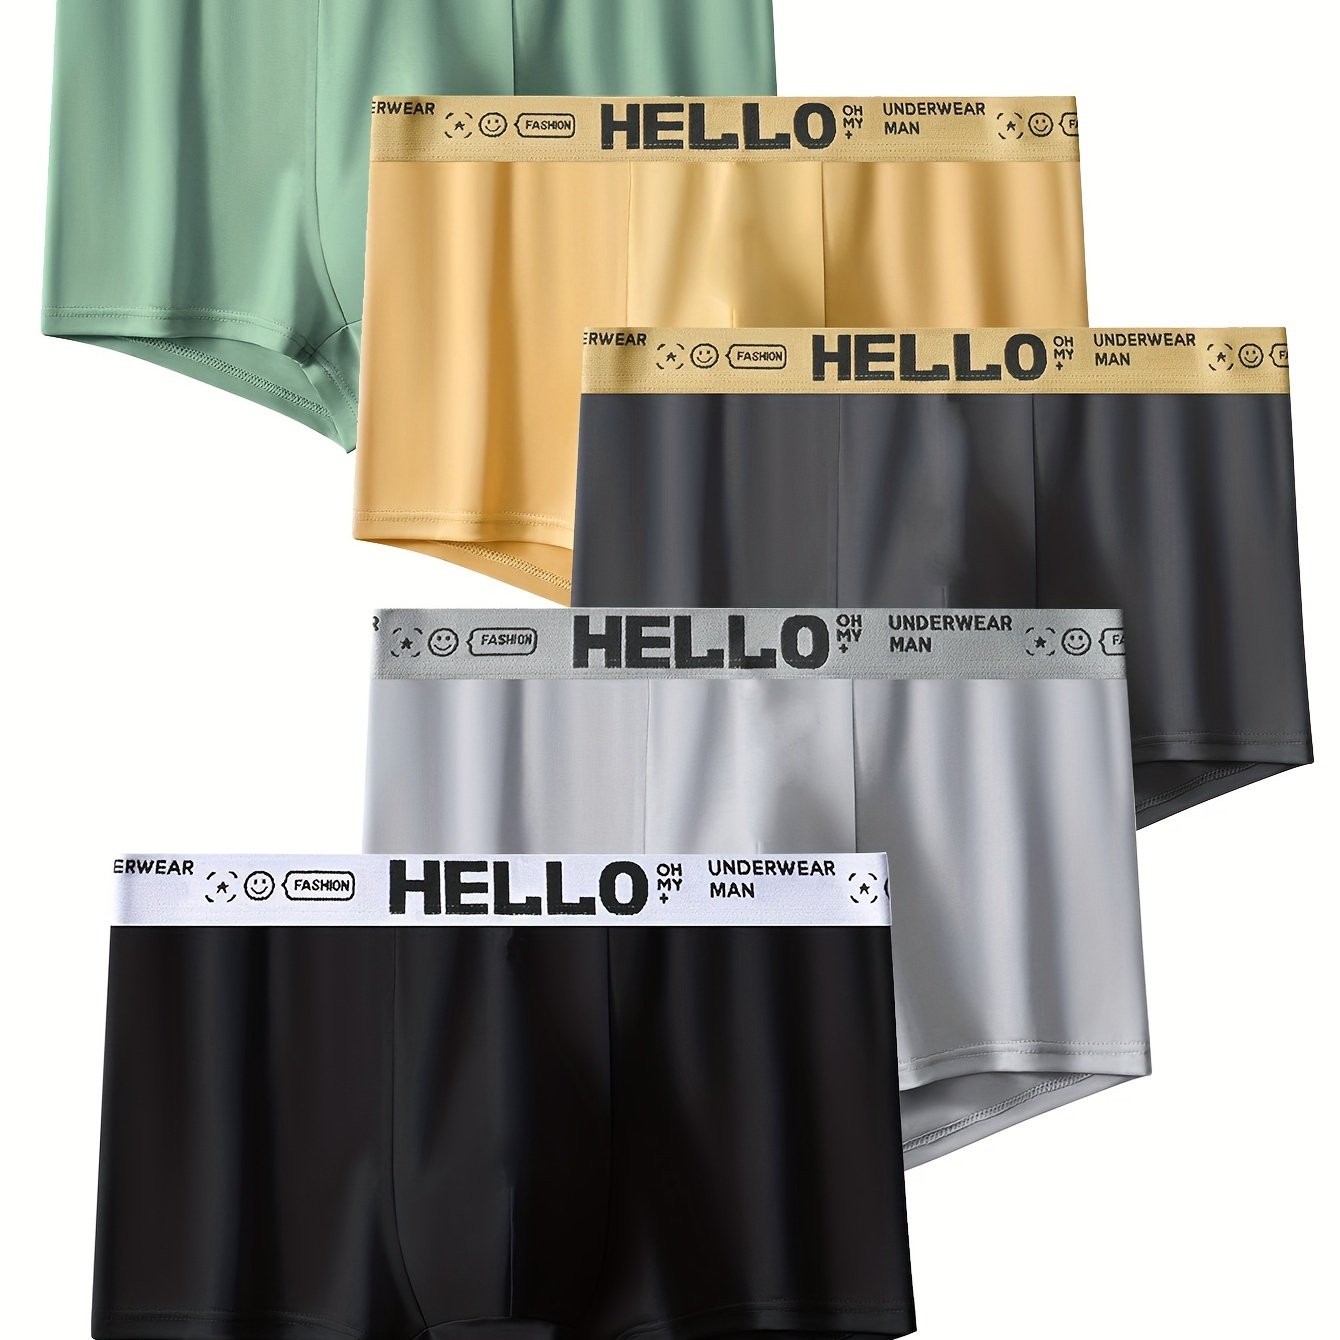 

5pcs Men's Cotton Breathable Comfy Stretchy Boxer Briefs Shorts, 'hello' Print Fashion Boxer Trunks, Men's Underwear